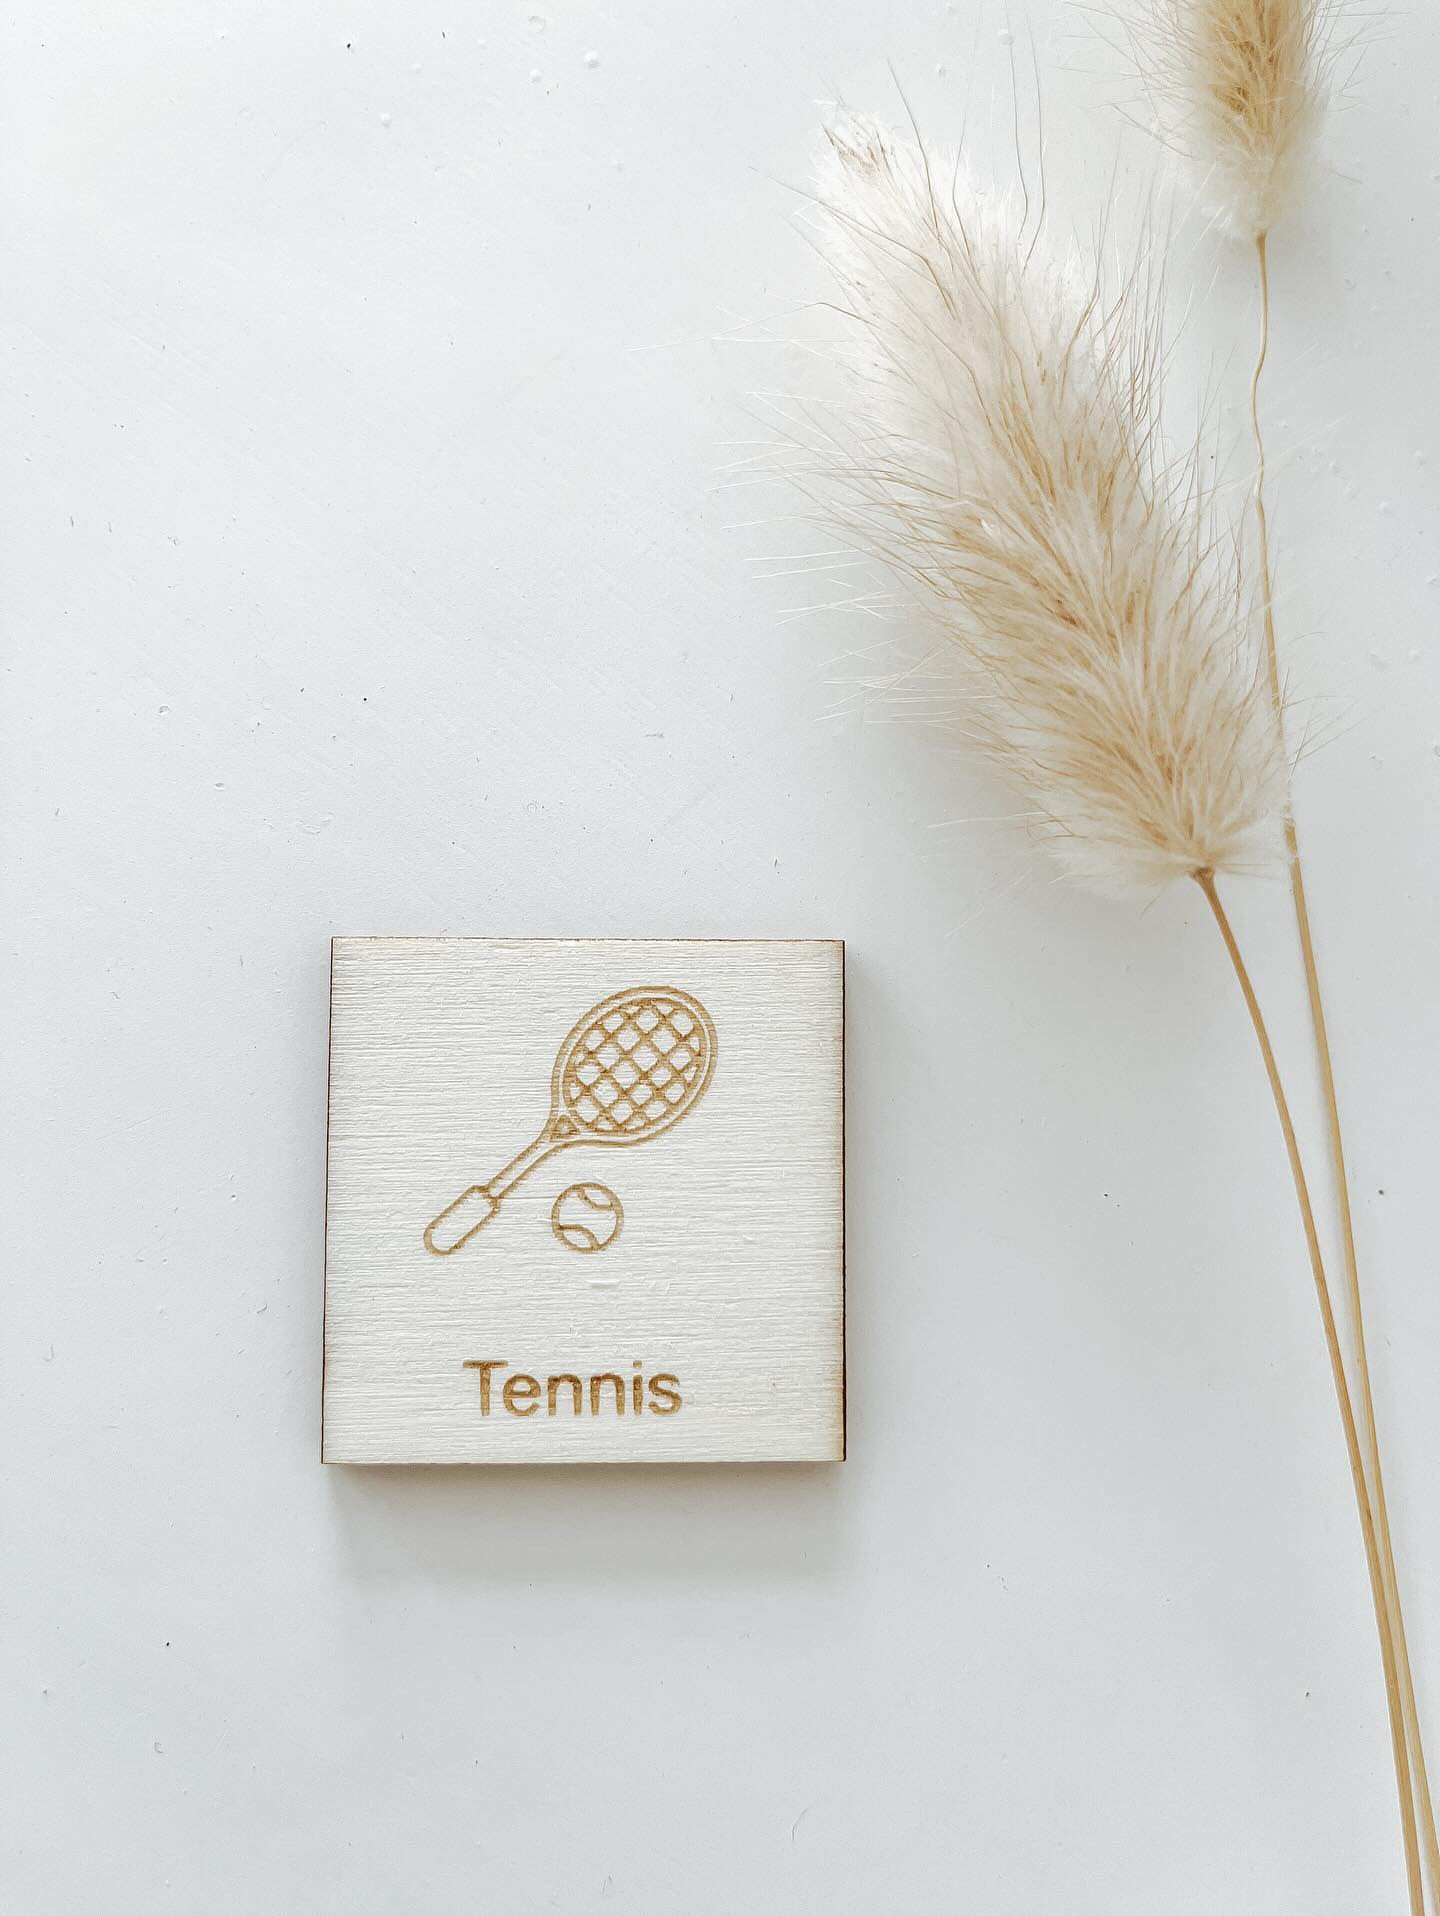 Pictogram tennis